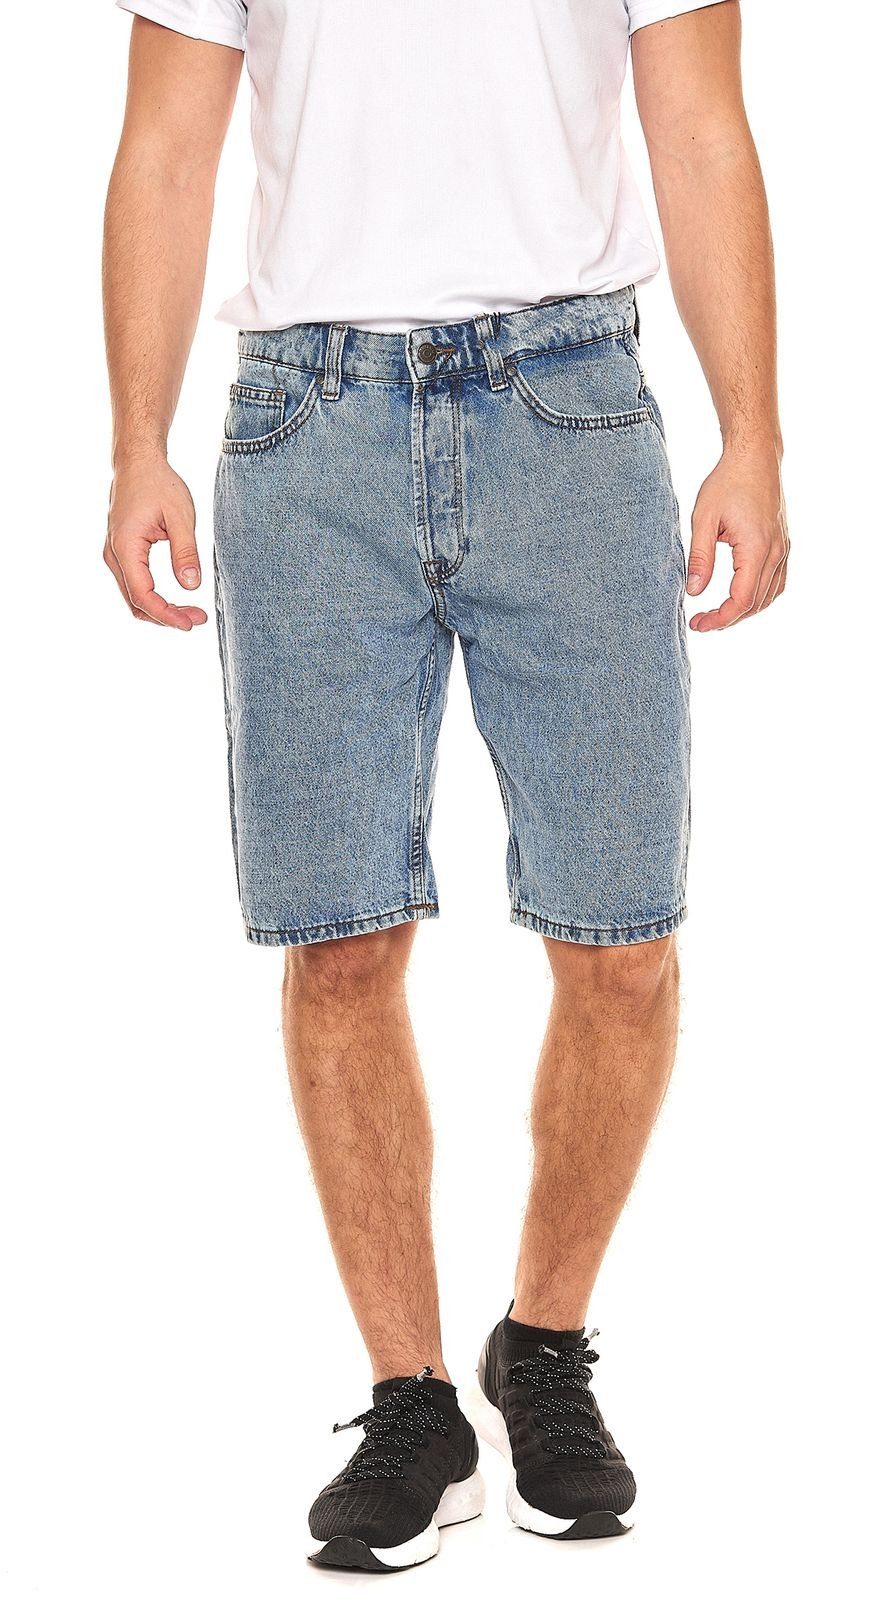 ONLY & SONS Stoffhose ONLY & SONS Avi Herren Jeans-Shorts verwaschene kurze Hose 22021908 Bermuda Blau